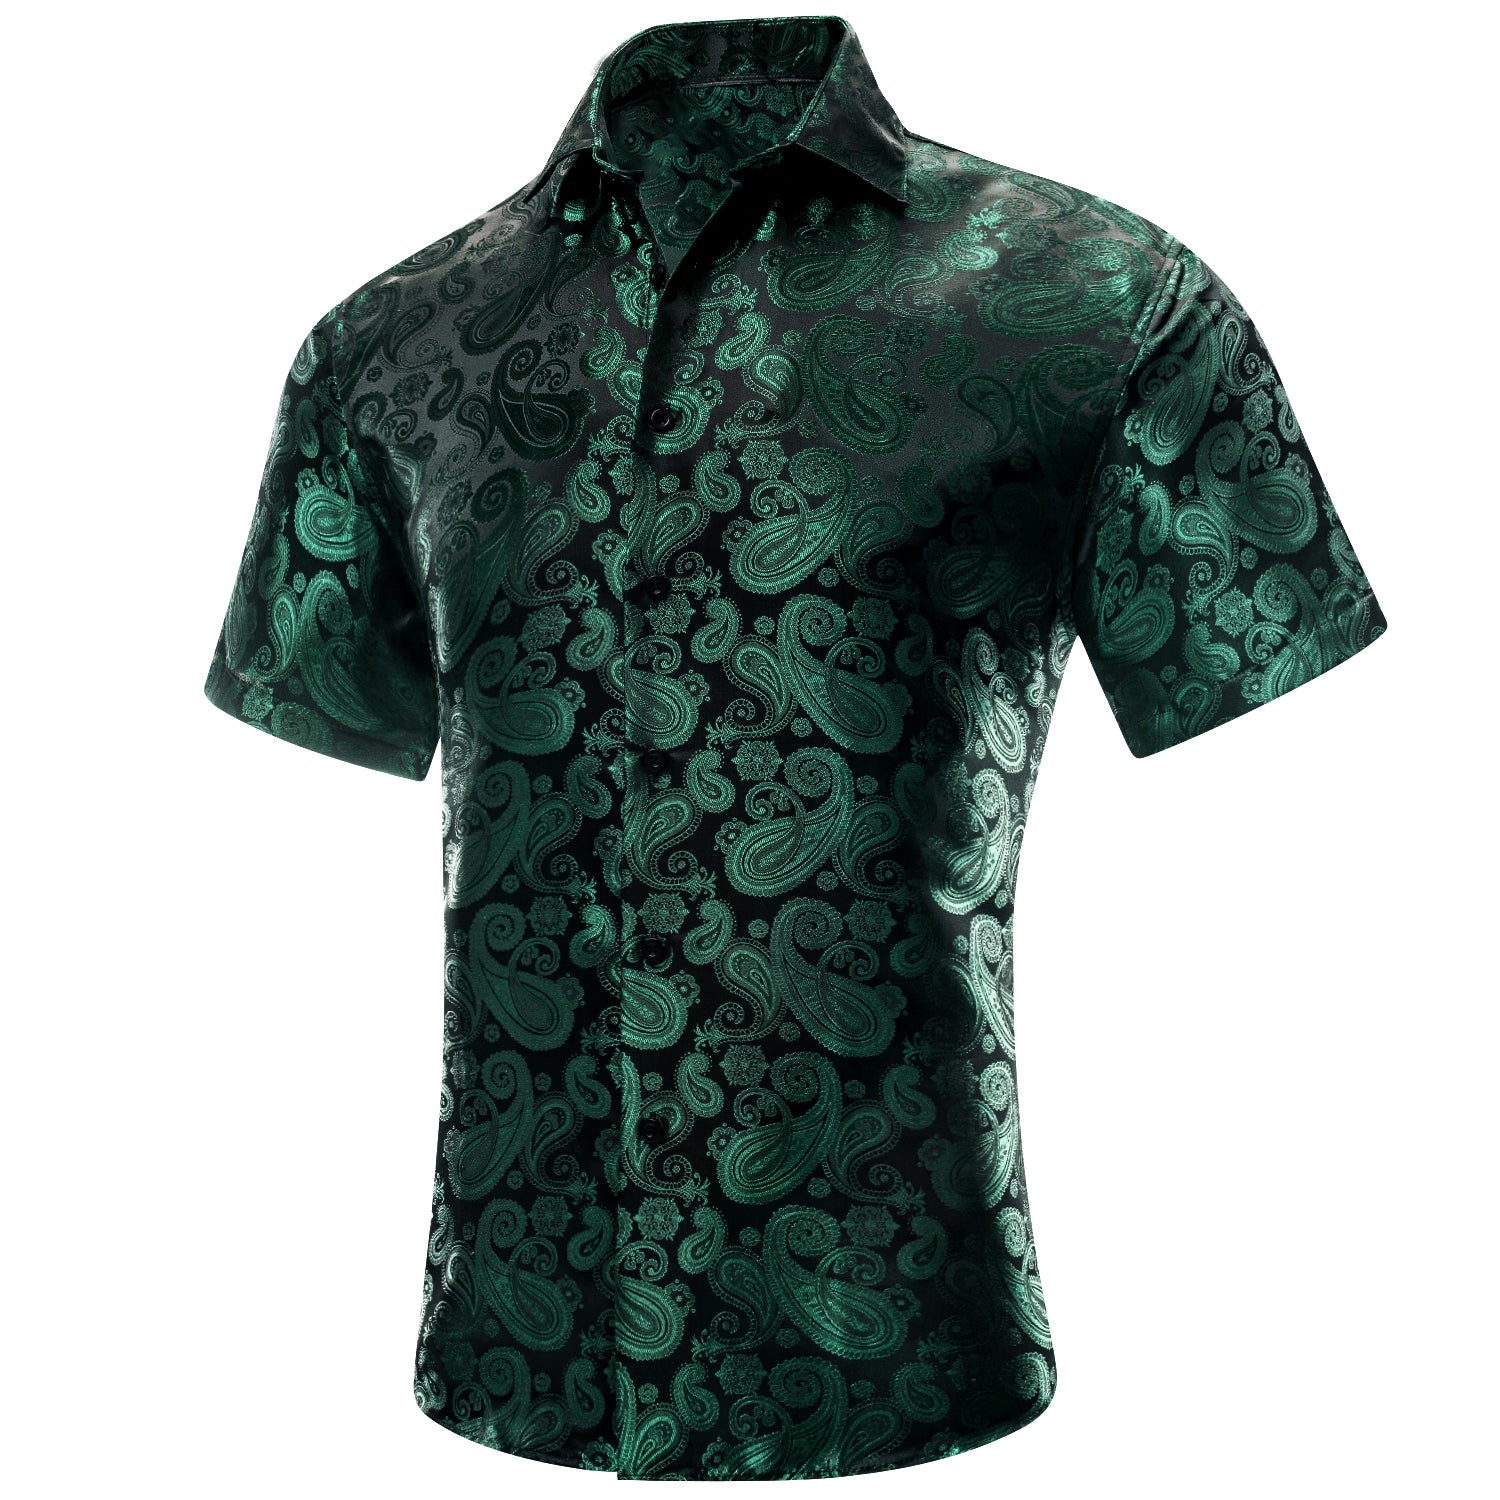 Hitie Emerald Green Paisley Silk Men's Short Sleeve Shirt